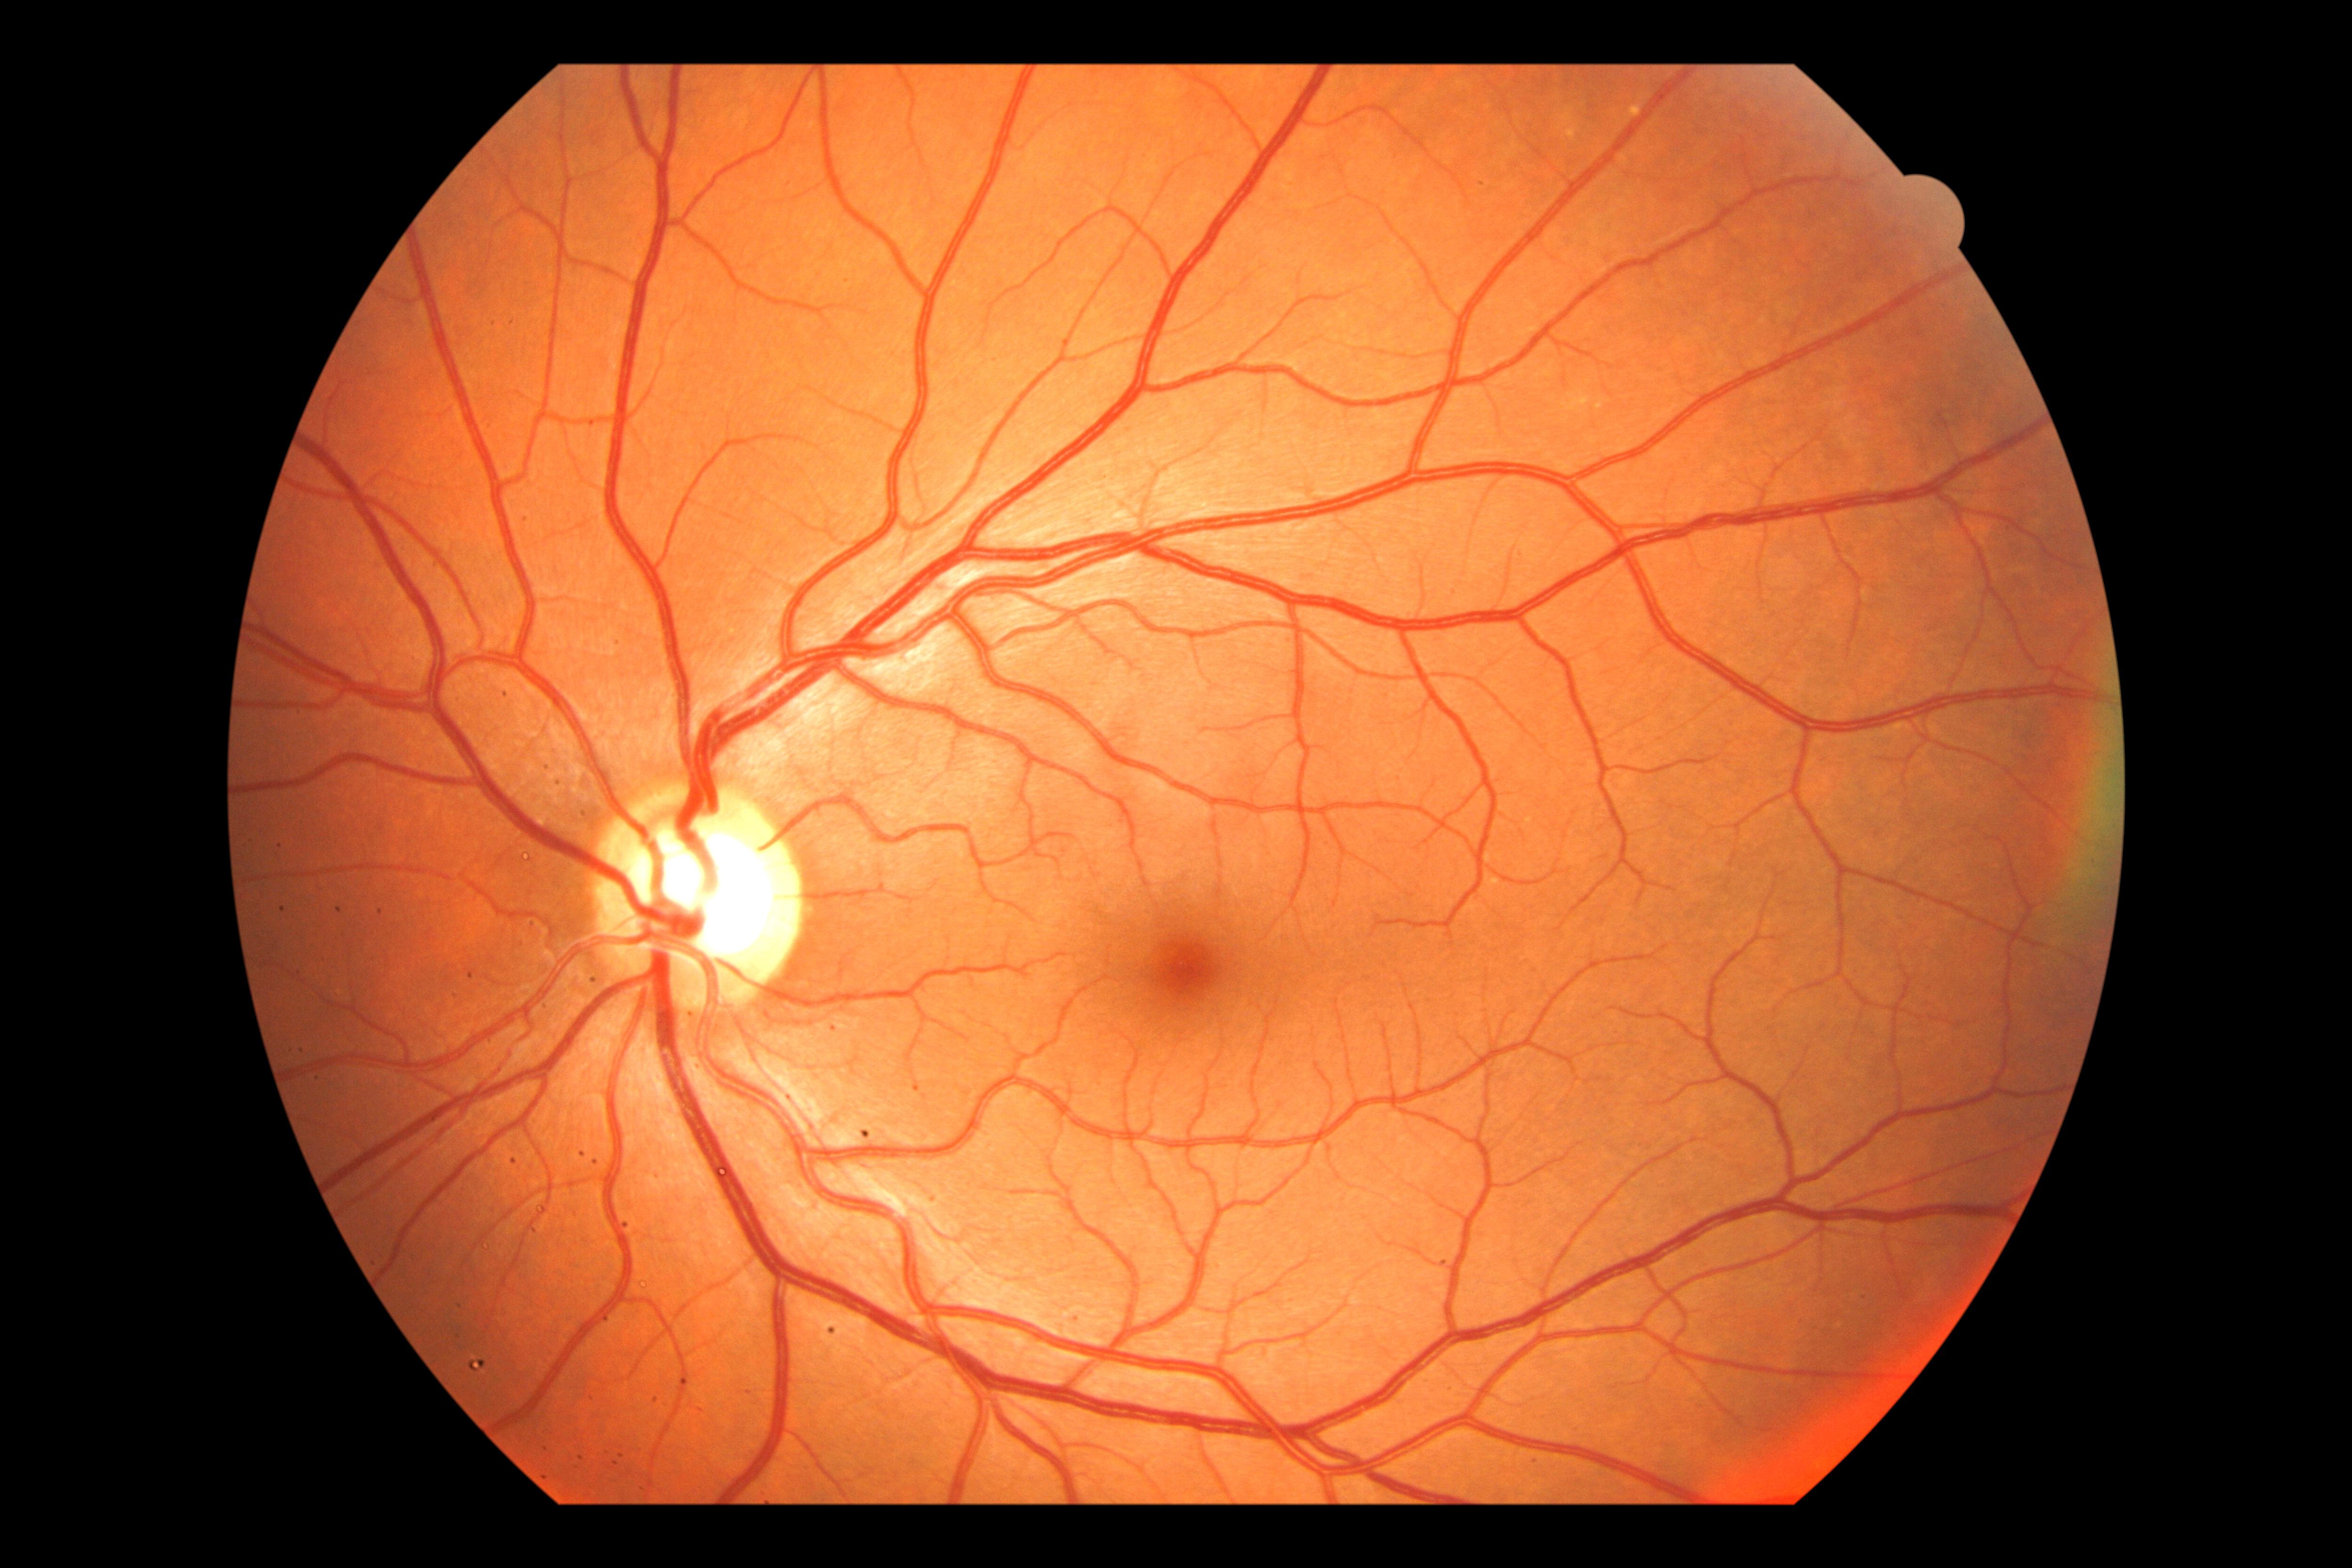 retina diagram